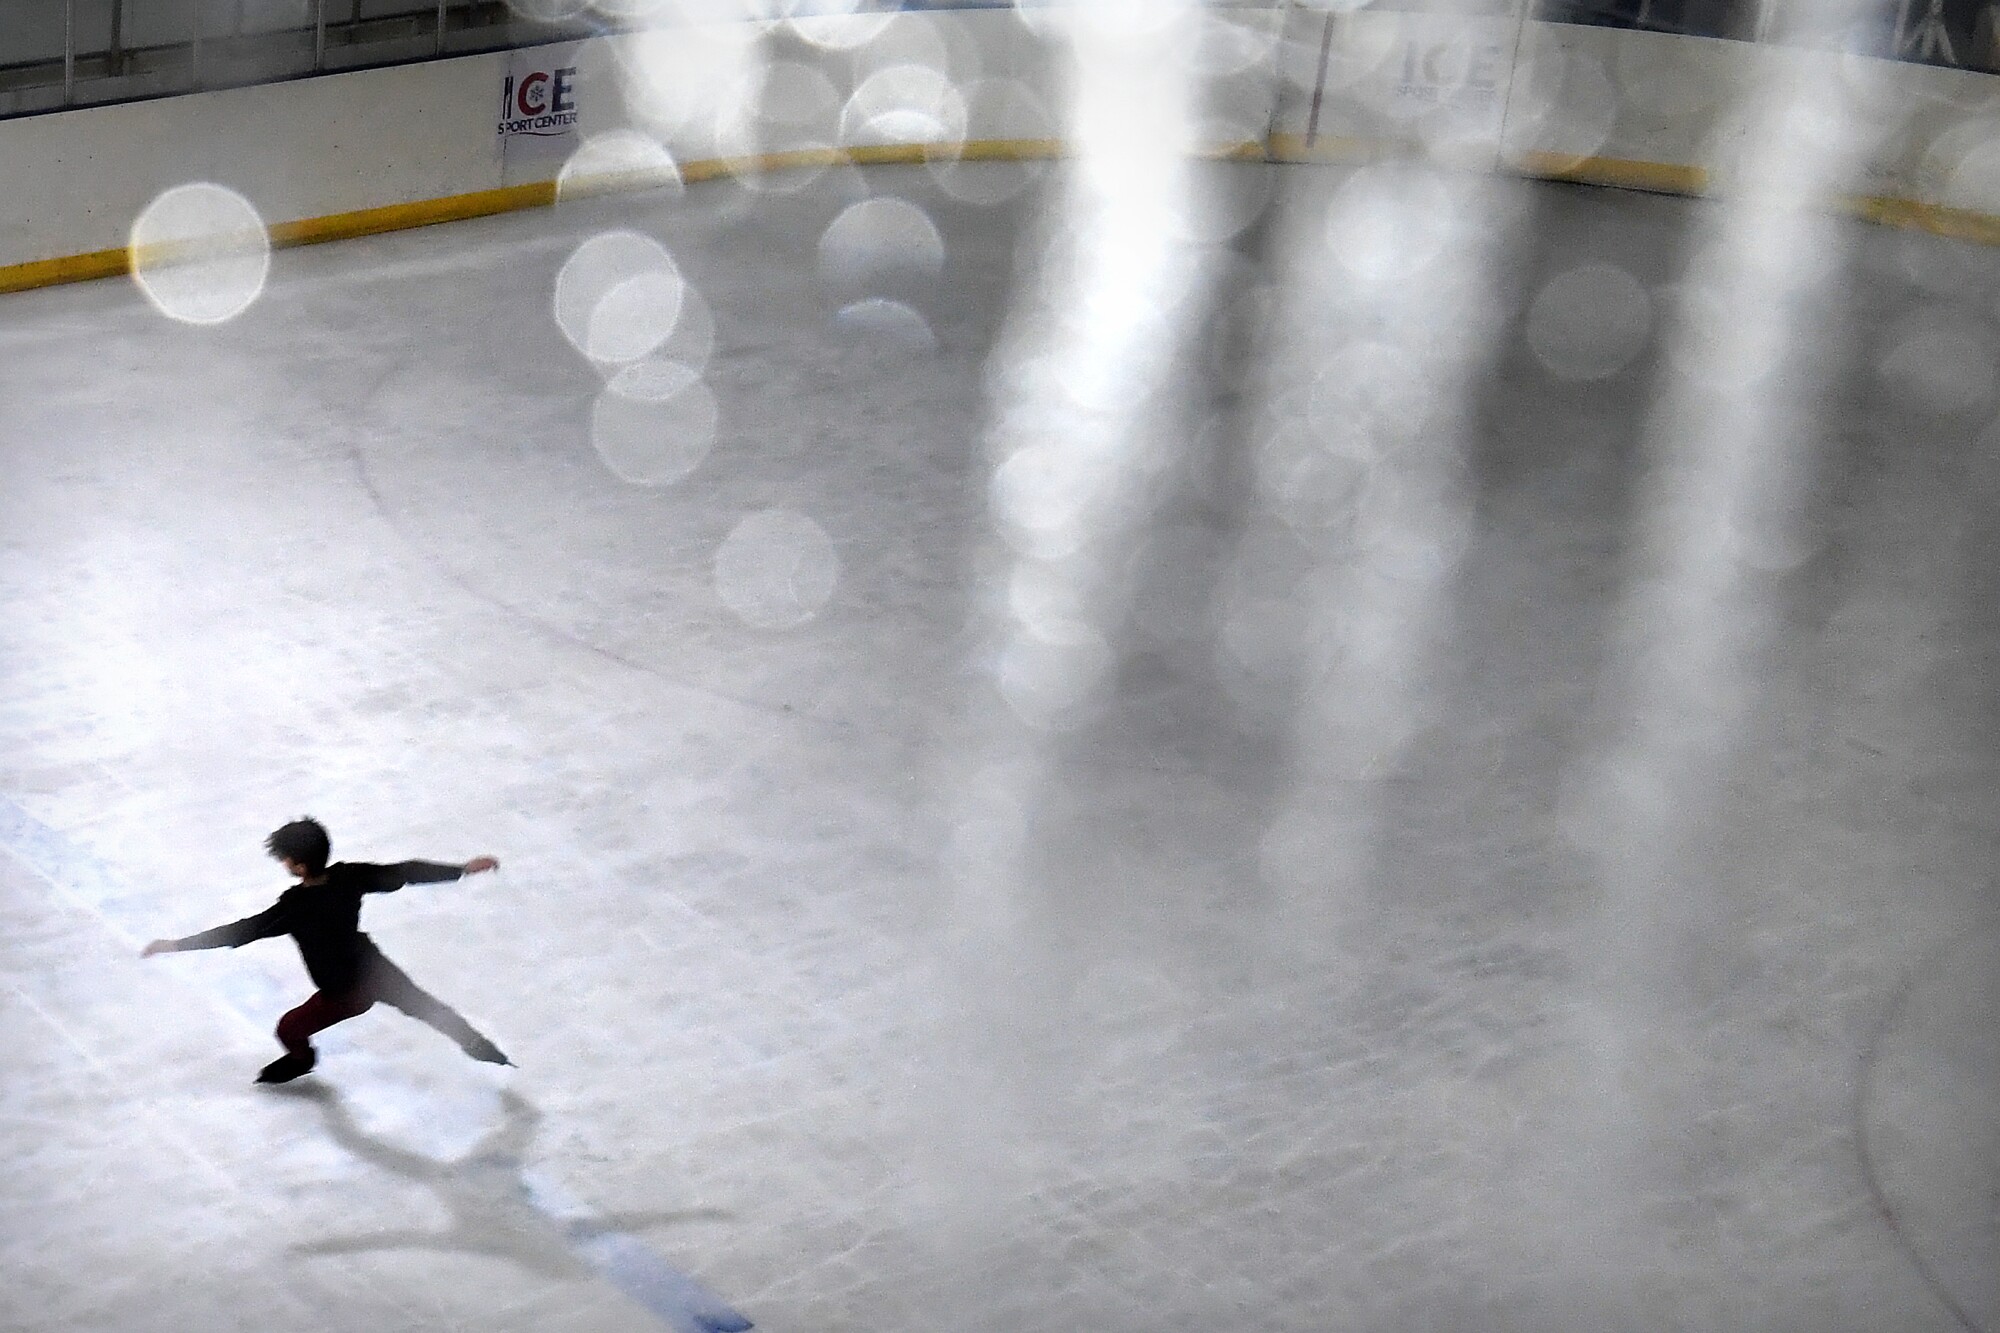 El patinador artístico mexicano Donovan Carrillo practica en una pista de hielo